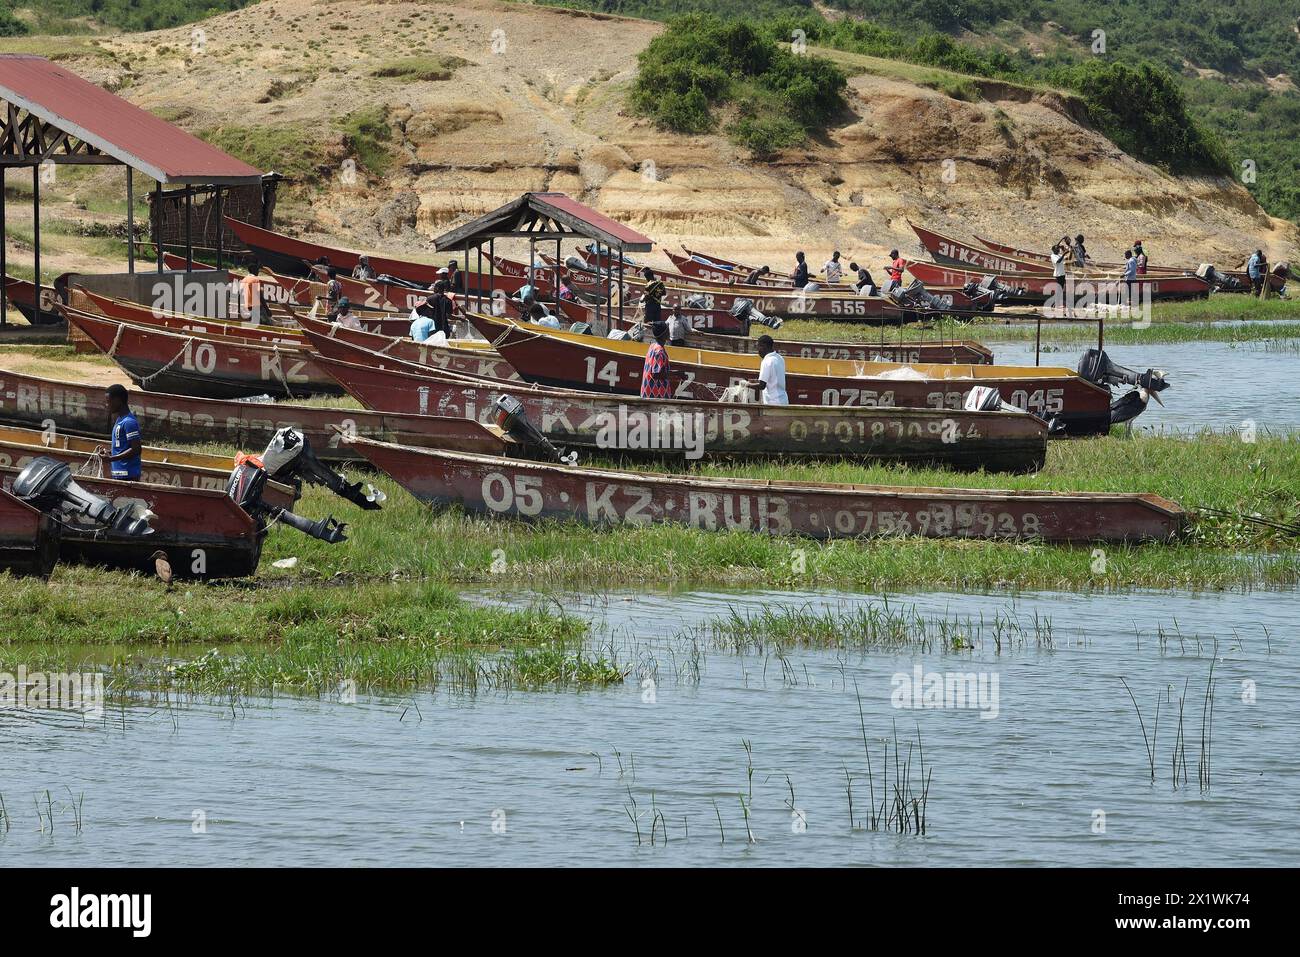 Les pêcheurs préparent méticuleusement leurs canoës motorisés le long des eaux tranquilles du canal de Kazinga, en veillant à ce que tout le matériel soit prêt avant embarki Banque D'Images